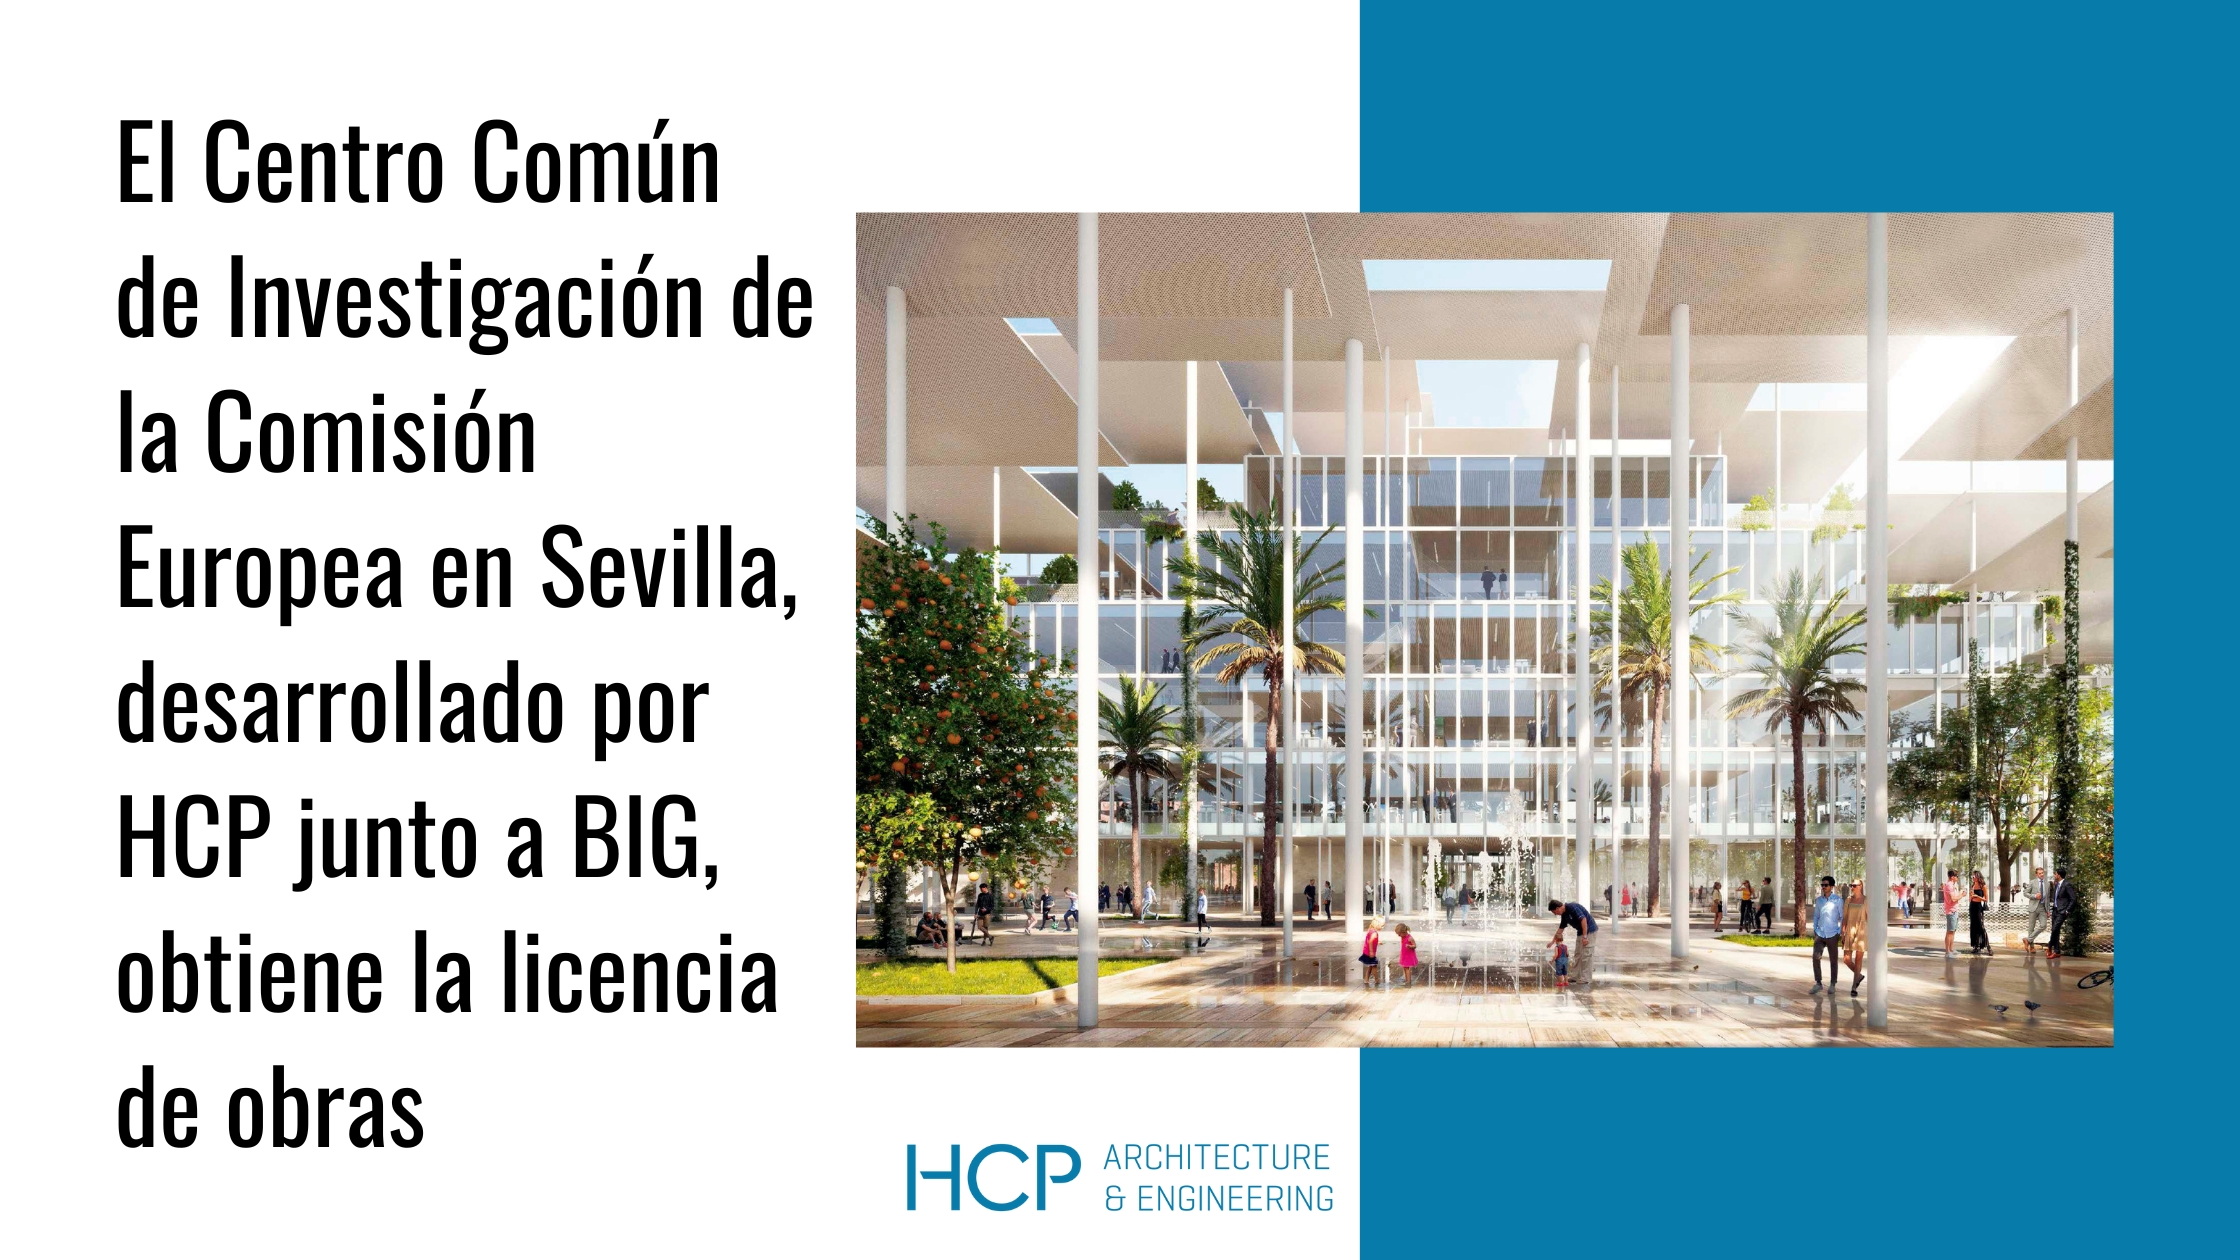 El Centro Común de Investigación de la Comisión Europea en Sevilla, desarrollado por el estudio de arquitectura español HCP junto a BIG, obtiene su licencia de obra